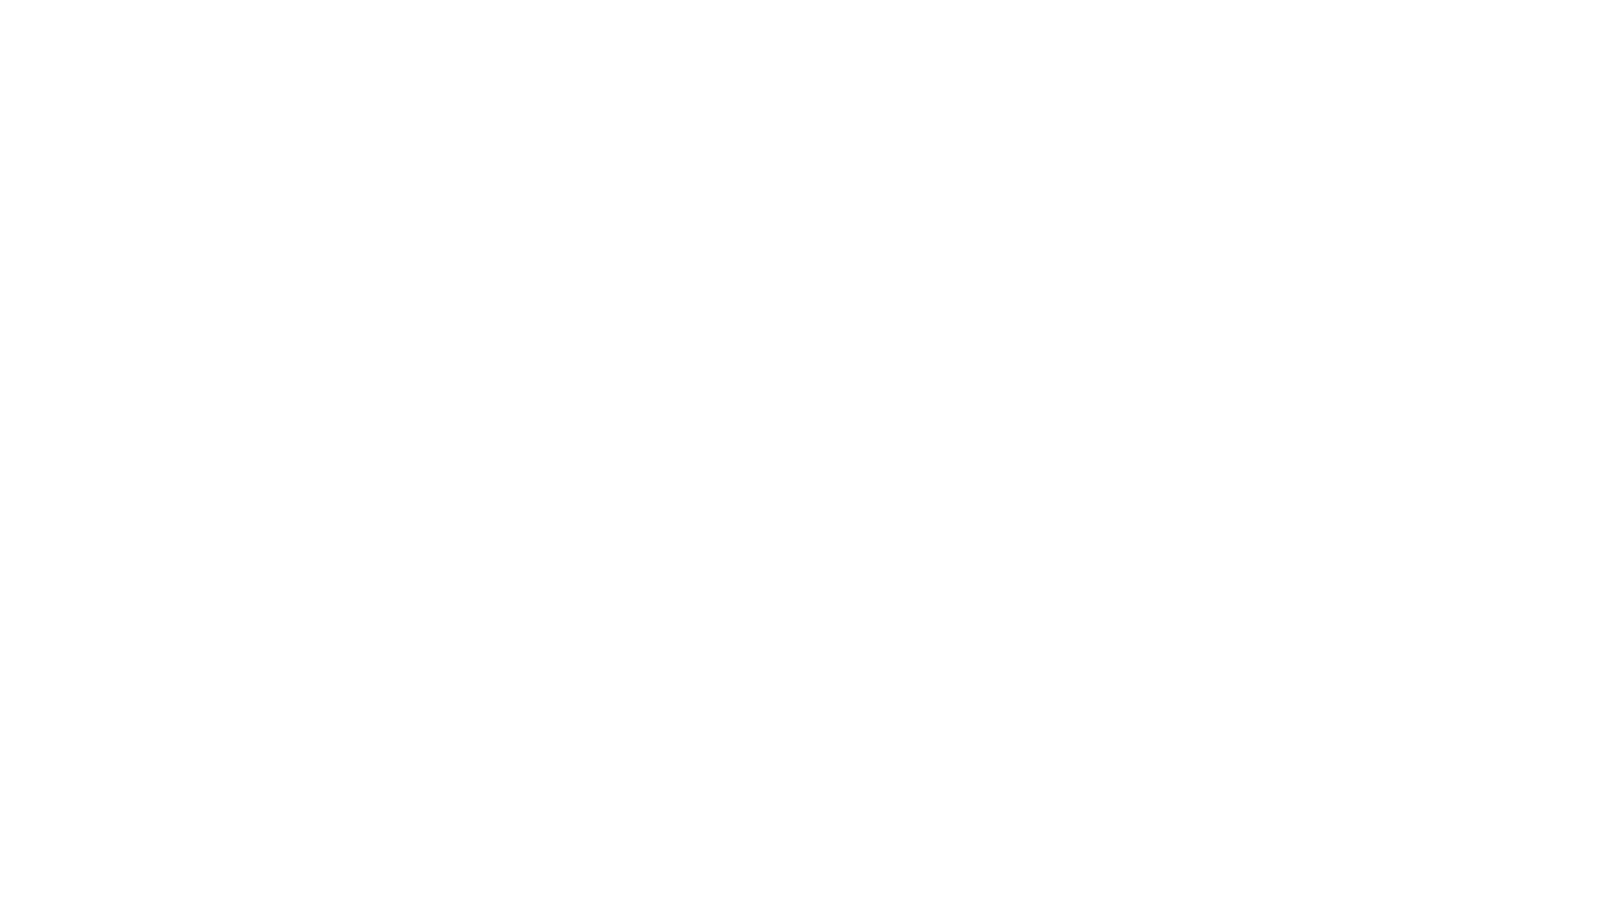 La Galleria Nazionale dell’Umbria di Perugia ha ospitato la presentazione dell’avvio del progetto di restauro del Gonfalone del Farneto di Pietro Perugino, reso possibile grazie al finanziamento di Coop Centro Italia e all’impegno di Fondazione NOI Legacoop Toscana nell’ambito di un più ampio progetto culturale volto a valorizzare la mostra “Il meglio maestro d’Italia. Perugino nel suo tempo”.
L’opera, dipinta a tempera su tela dall’artista umbro intorno al 1472, è uno stendardo processionale proveniente dal convento francescano della Santissima Pietà del Farneto a Colombella, presso Perugia, e sarà parte del percorso espositivo della grande mostra “Il meglio maestro d’Italia”. Perugino nel suo tempo, in programma alla Galleria Nazionale dell’Umbria di Perugia, dal 4 marzo all’11 giugno 2023, che celebra Pietro Vannucci (1450 ca.-1523), il più importante pittore attivo negli ultimi due decenni del Quattrocento, in occasione del V centenario della sua morte.
All’incontro erano presenti i curatori della rassegna, Marco Pierini e Veruska Picchiarelli, rispettivamente direttore e conservatrice della Galleria Nazionale dell’Umbria, Antonio Bomarsi, presidente del Consiglio di Amministrazione di Coop Centro Italia e Irene Mangani, presidente della Fondazione NOI Legacoop Toscana.
“Contribuire concretamente al restauro di questa splendida opera e, più in generale, ad un evento così importante è per noi un onore e motivo di grande orgoglio” ha dichiarato Antonio Bomarsi, presidente del Consiglio di Amministrazione di Coop Centro Italia.
“Può apparire ai più strano – ha proseguito Antonio Bomarsi – che una cooperativa che opera nella distribuzione di prodotti di consumo alimentare e non, abbia deciso di prendere parte ad un progetto di restauro. L’abbiamo fatto perché consapevoli dell’importanza che lo stesso può rappresentare per la Regione Umbria. Come Coop Centro Italia siamo fermamente convinti che investire in cultura significhi investire nel territorio e nel futuro del territorio stesso. La cultura ci unisce, è strumento di coesione sociale, ma al contempo è anche ponte verso ciò che non ci appartiene e non conosciamo, perché ci permette di comprenderlo al meglio. Investire in cultura per noi di Coop significa quindi partecipare in maniera diretta alla crescita socioculturale del nostro territorio e siamo lieti che grazie al nostro contributo una delle prime opere del Perugino potrà tornare al suo antico splendore ed essere ammirata, anche dopo il termine della mostra sul Perugino, presso questo splendido museo”.
“Tra gli obiettivi della Fondazione NOI Legacoop Toscana – ha sottolineato la sua presidente Irene Mangani – c’è quello di facilitare l’accesso alla cultura, soprattutto tra i giovani. Per questo siamo felici di partecipare alla promozione di un progetto tanto importante come la splendida mostra che celebrerà i 500 anni del Perugino. Speriamo che un gran numero di giovani e soci delle cooperative aderenti a Legacoop voglia partecipare a questo appuntamento”.
“Quando parliamo di museo diffuso – ha affermato Marco Pierini, direttore della Galleria Nazionale dell’Umbria – pensiamo sempre alle opere: in realtà diffondere un museo passa soprattutto dalla sensibilità di persone che riconoscono nella cultura un valore identitario e socialmente fondamentale. Il patrimonio, lo insegna la Convenzione di Faro, è della e per la comunità: azioni come quella che stiamo presentando è la conferma che il lavoro che stiamo facendo nel veicolare un’idea di arte a trecentosessanta gradi sta andando nella giusta direzione”. 
“Iniziative come questa – ha concluso Marco Pierini – servono a coprire aspetti del nostro agire quotidiano che vanno dal restauro, passando per la didattica, sino alla comunicazione e promozione, e sono esempi brillanti di come un museo dovrebbe dialogare e coinvolgere”. 
Nel Gonfalone del Farneto la critica concorda nel riconoscere una delle prove capitali del giovane Pietro Perugino, che vi lavorò nei primi anni settanta del Quattrocento, all’indomani del fondamentale periodo formativo trascorso a Firenze nella bottega di Andrea del Verrocchio, accanto a “compagni di studi” quali Leonardo da Vinci, Sandro Botticelli e Domenico Ghirlandaio. La profonda e personale rimeditazione degli insegnamenti appresi dall’orafo, scultore e pittore fiorentino è evidente nel trattamento dei volumi e delle anatomie, nella modulazione dei panneggi, resi quasi come fossero lamine metalliche, nella definizione del paesaggio aggiornata sui modelli fiamminghi.
Il dipinto raffigura il Compianto sul corpo di Cristo, adagiato in grembo alla Madre e venerato da san Girolamo e dalla Maddalena. 
- ISCRIVITI AL NOSTRO CANALE - https://www.youtube.com/channel/UC2-LnOzaS6O6cnRTMTBCUXg?sub_confirmation=1